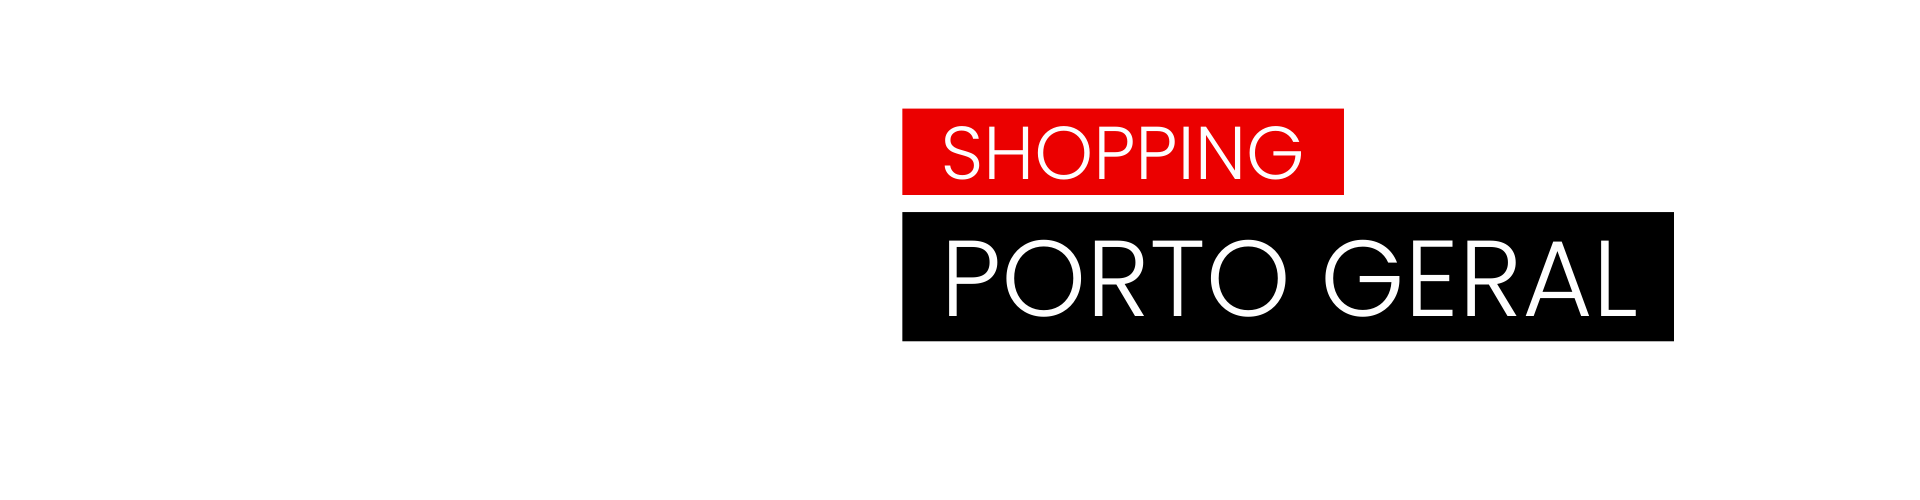 Shopping Porto Brás